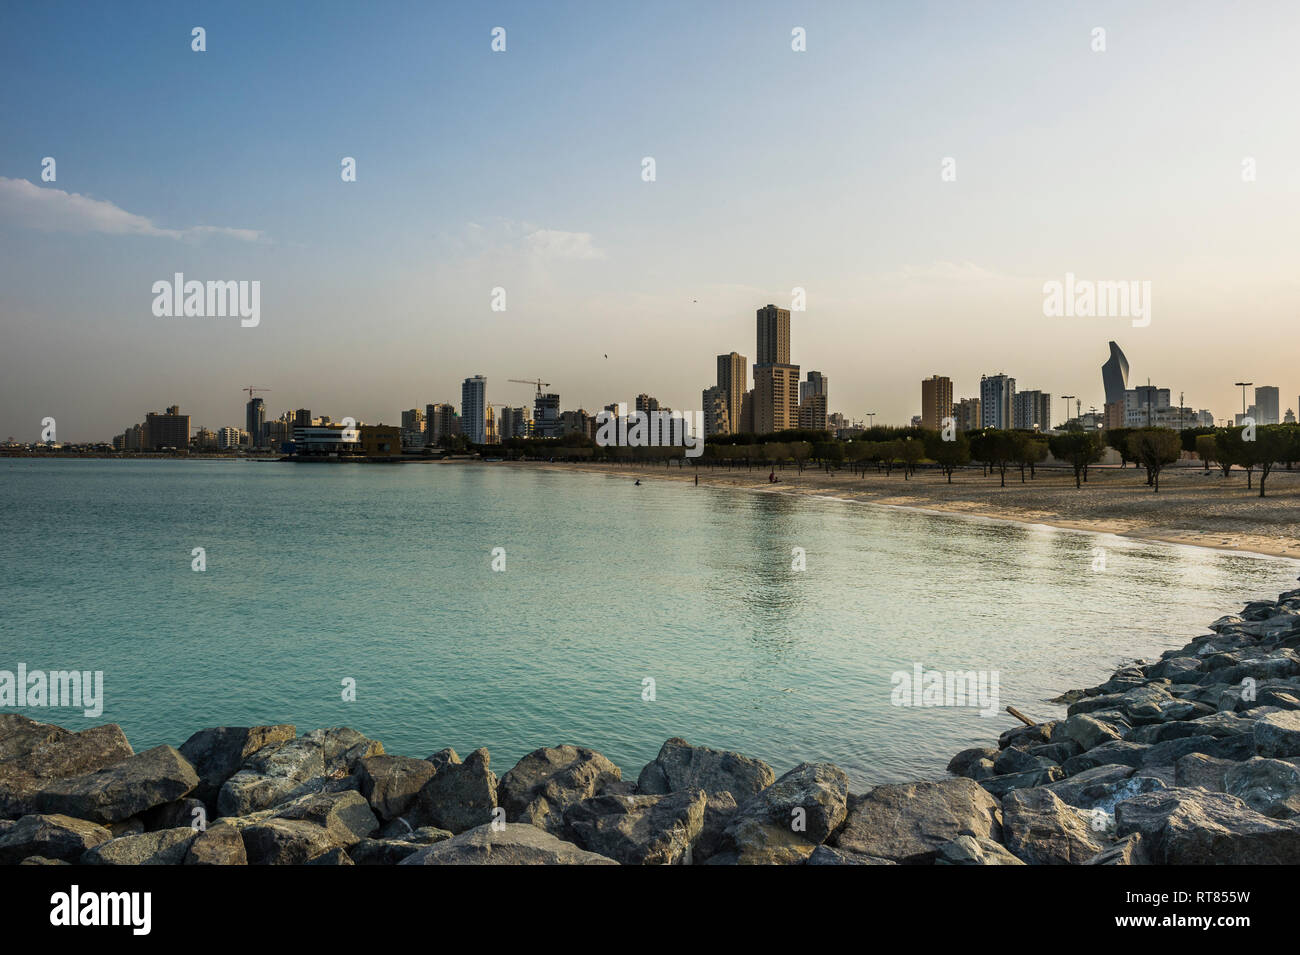 Saudi-arabien, Kuwait, Kuwait City, Persischer Golf, Strand im Abendlicht Stockfoto